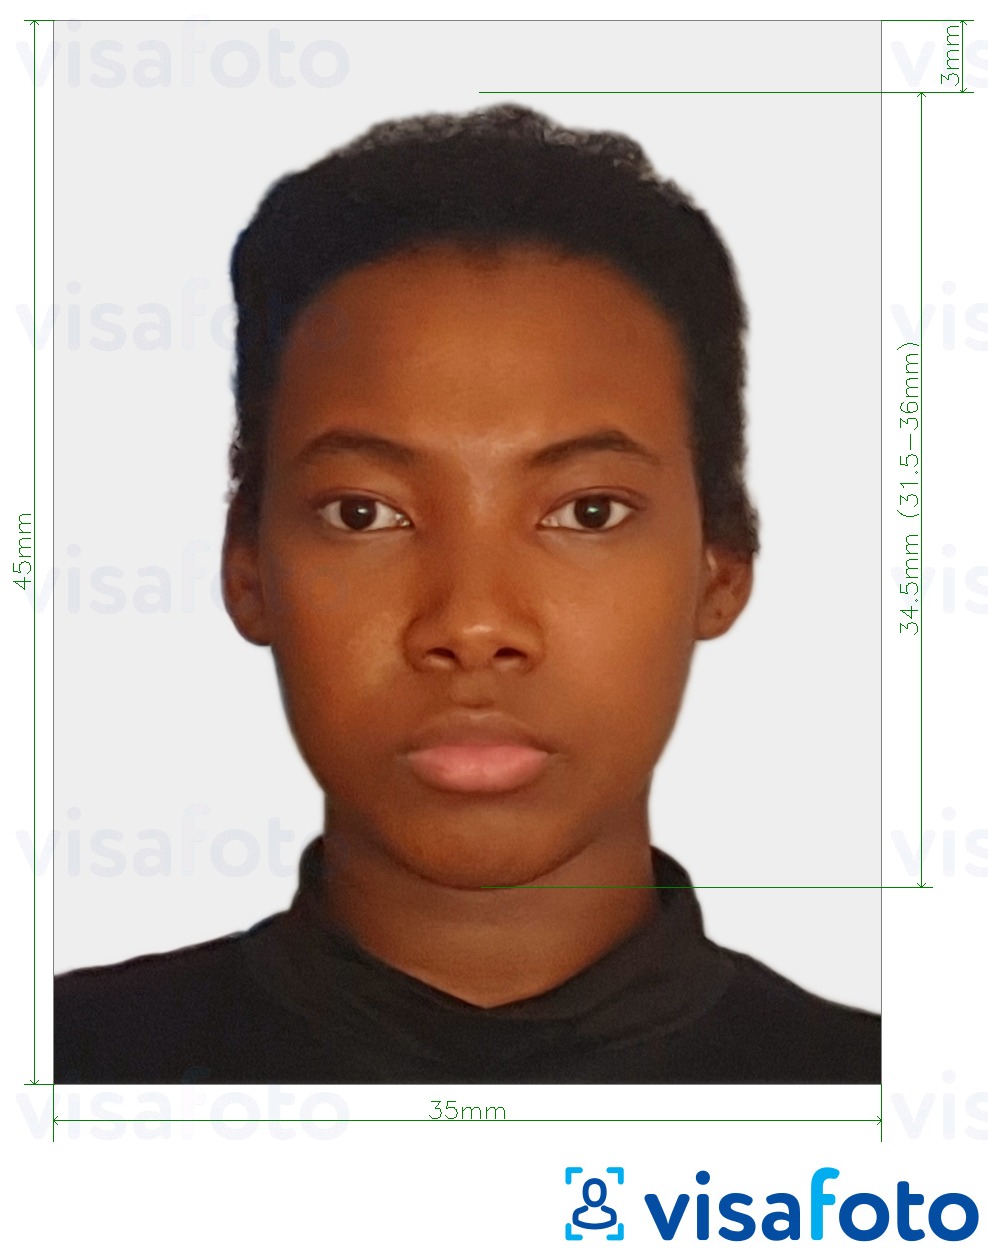 Образец фотографии для ЮАР паспорт 35х45 мм (3,5x4,5 см) с точными размерами